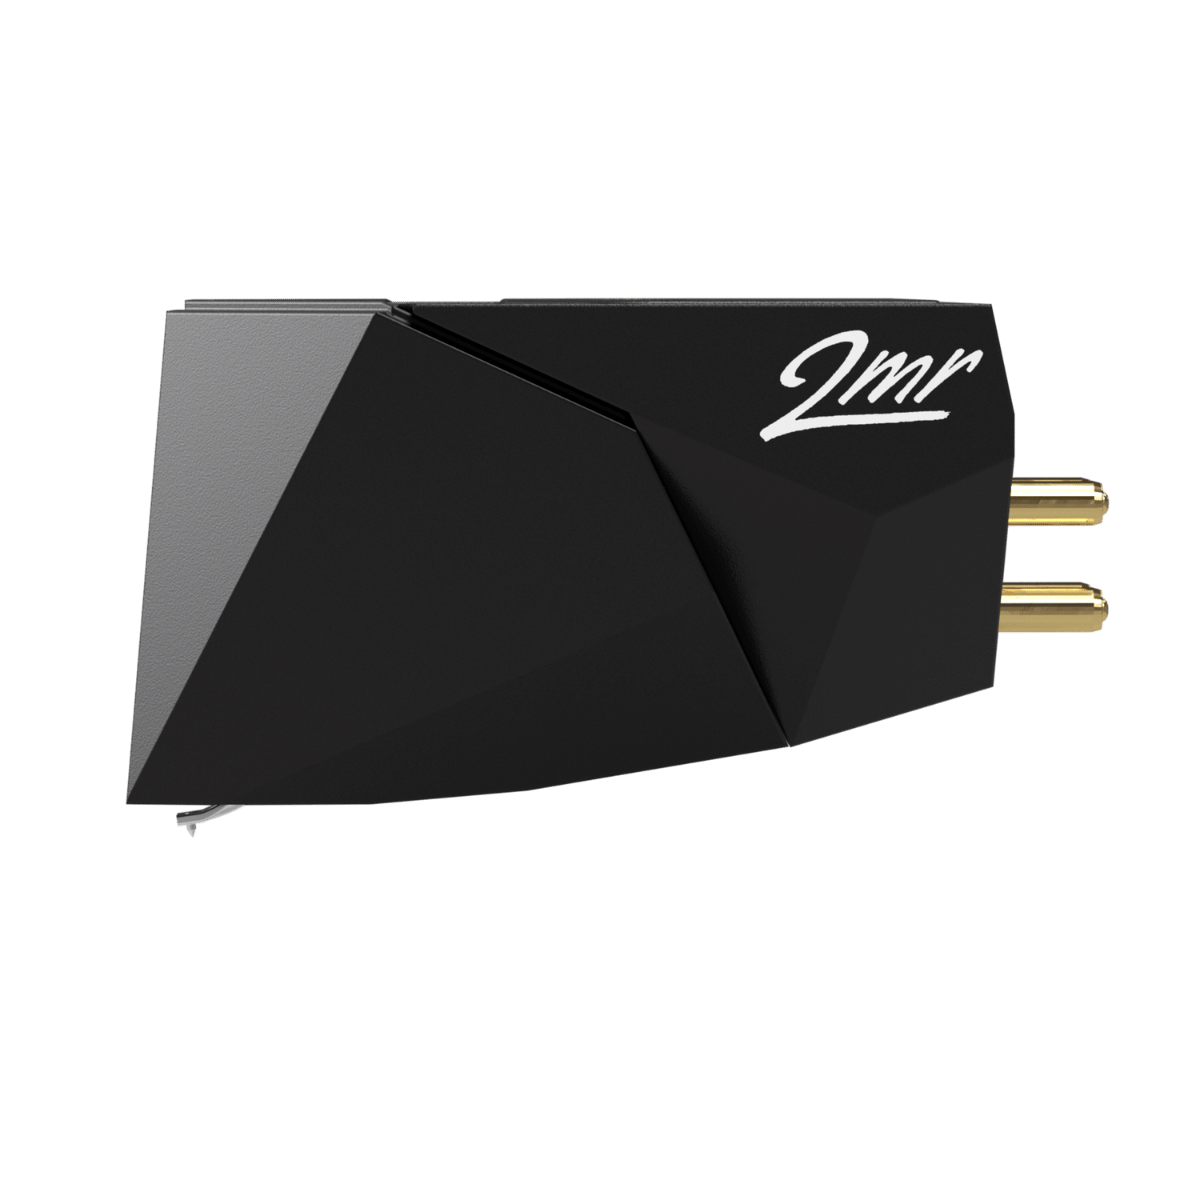 Ortofon 2M Black LVB 250 Moving Magnet Cartridge